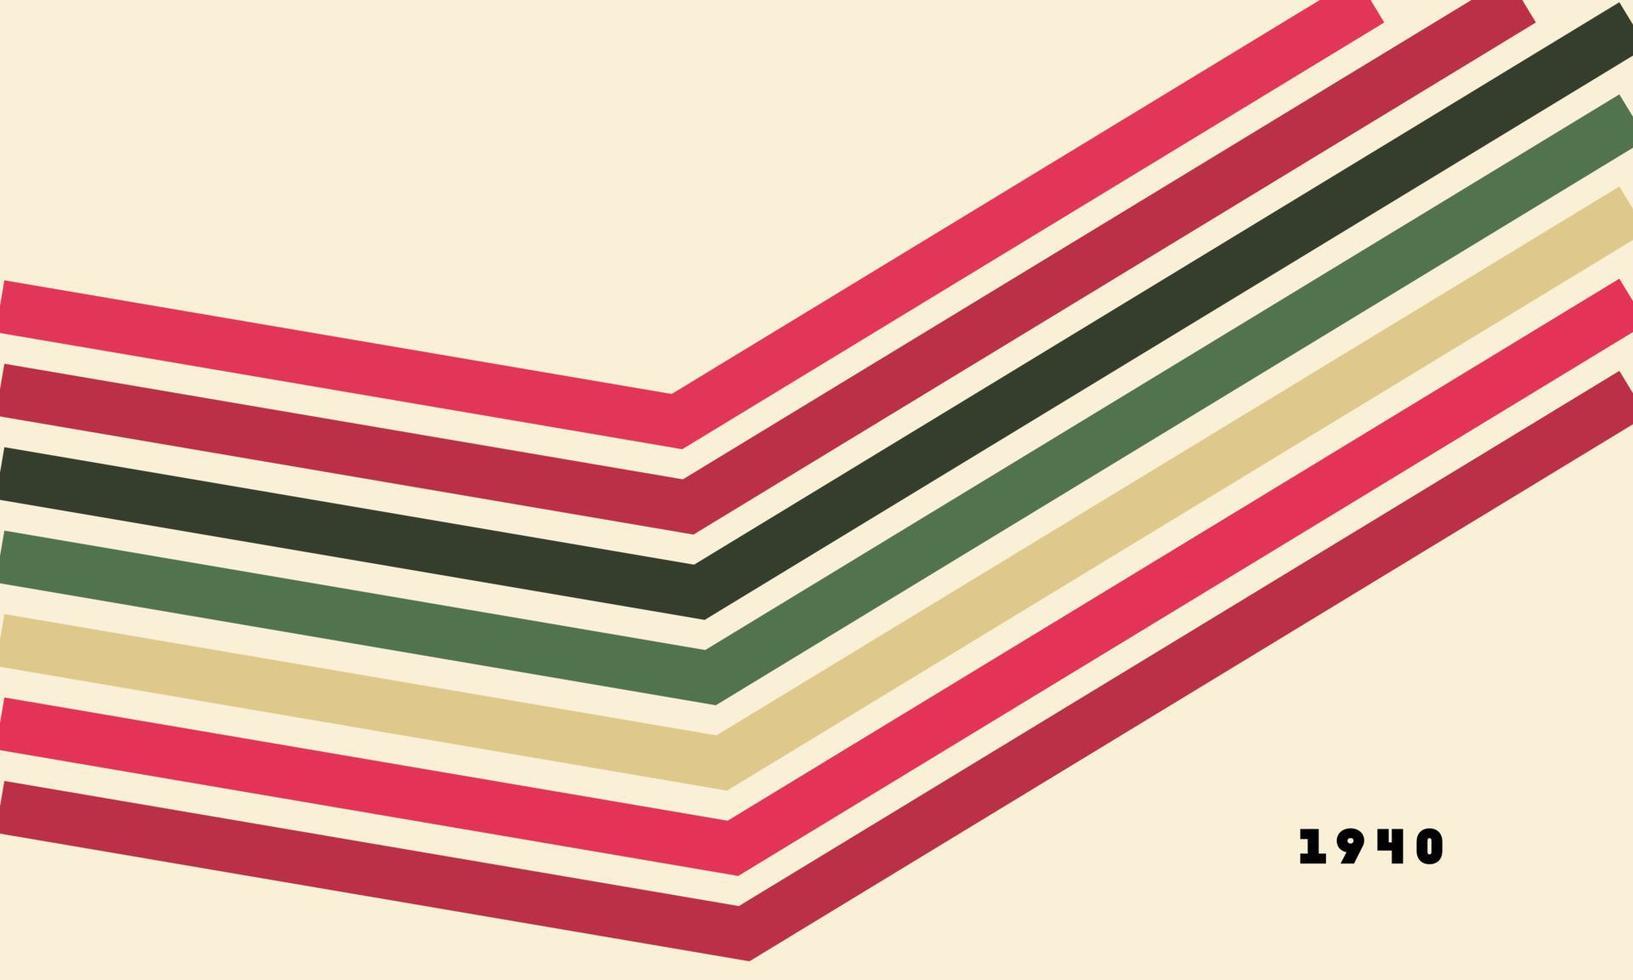 abstrakter bunter Hintergrundvektor der 40er Jahre. Vintage Tapete im Retro-Stil mit Linien, Regenbogenstreifen und geometrischen Formen. Farbillustrationsdesign der 1940er Jahre, geeignet für Poster, Banner, Dekoration, Wandkunst vektor